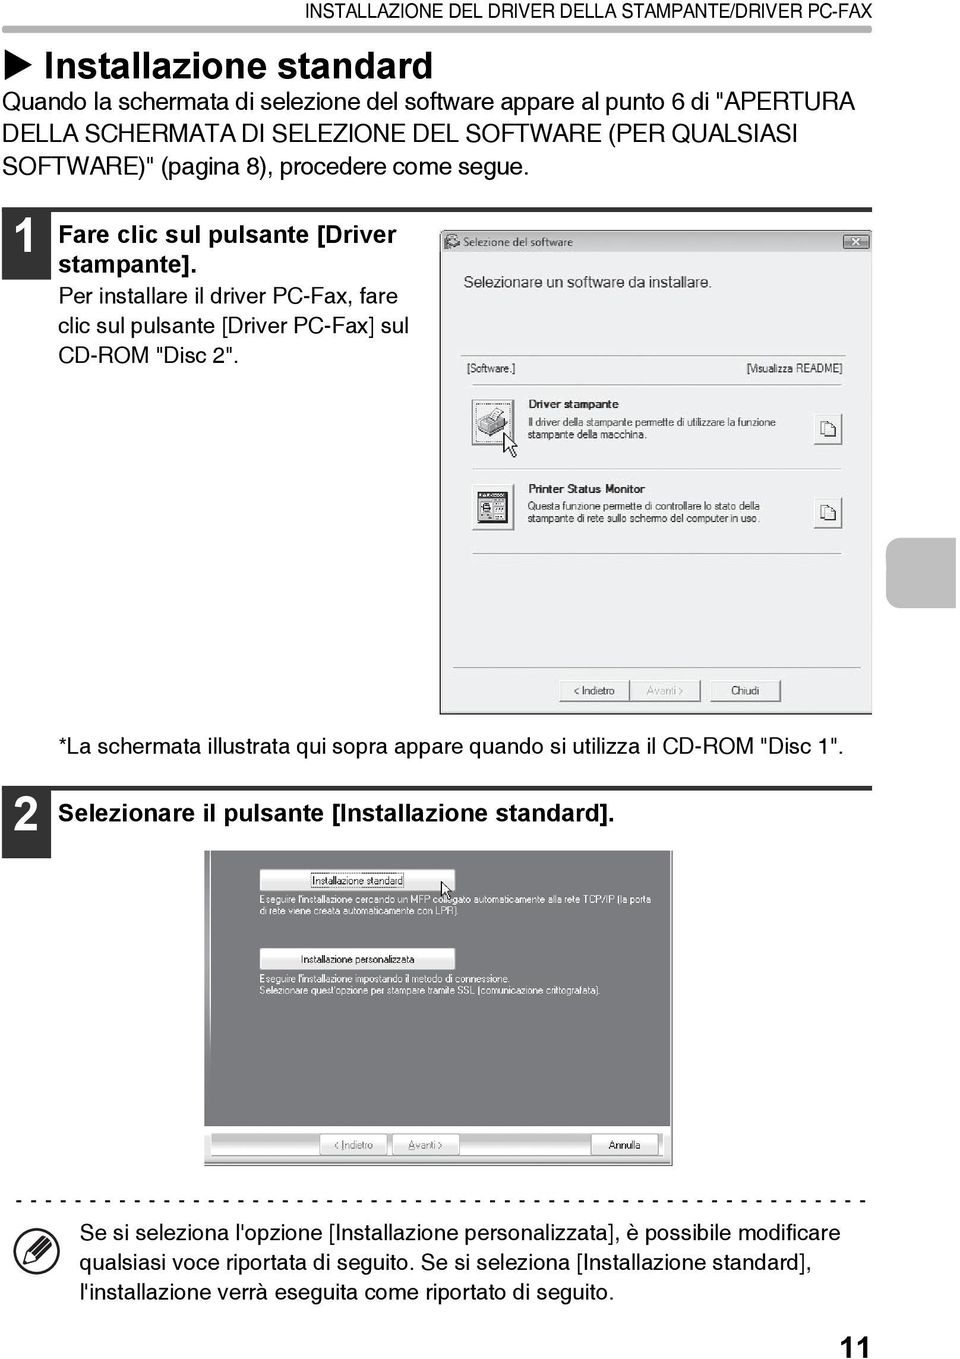 Per installare il driver PC-Fax, fare clic sul pulsante [Driver PC-Fax] sul CD-ROM "Disc 2". *La schermata illustrata qui sopra appare quando si utilizza il CD-ROM "Disc 1".